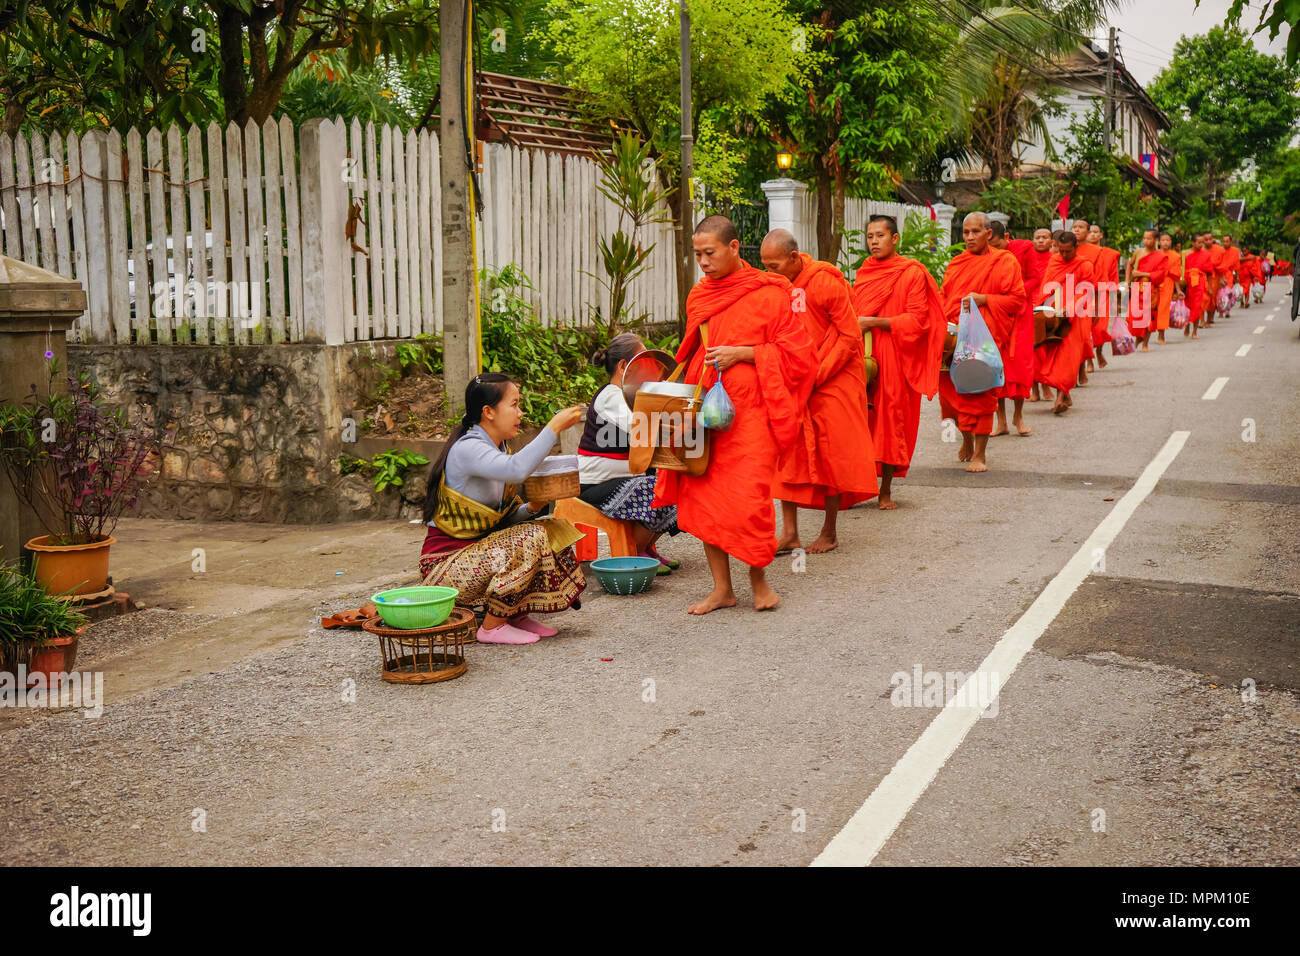 Luangprabang, Laos - Dezember 8, 2015: Laos Menschen mit Speisen und Dinge zu Gruppe von buddhistischen Mönchen in Morgen auf die ländliche Straße in Luangprabang, Lao Stockfoto